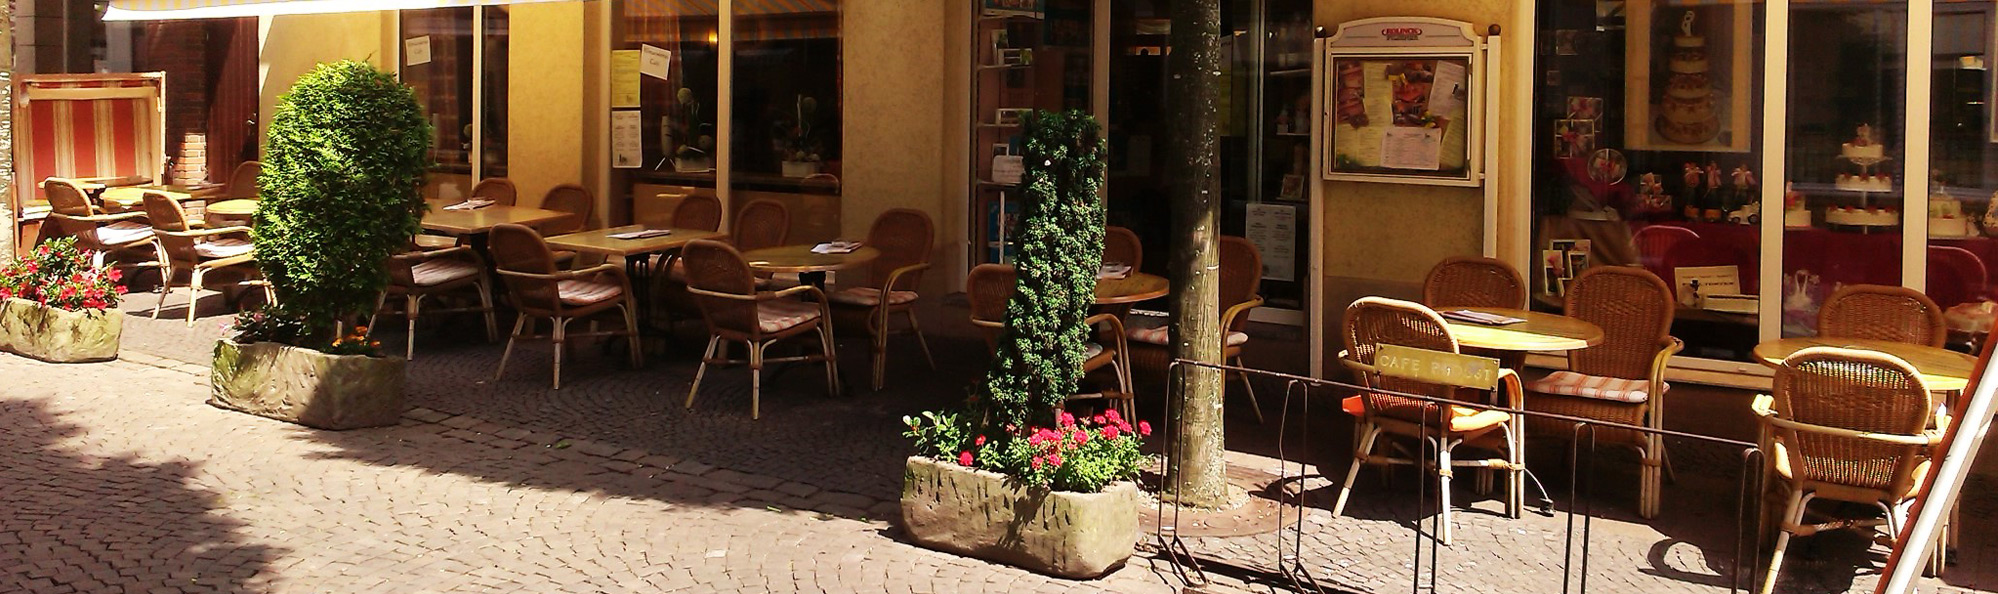 Café Konditorei Probst - Außenansicht